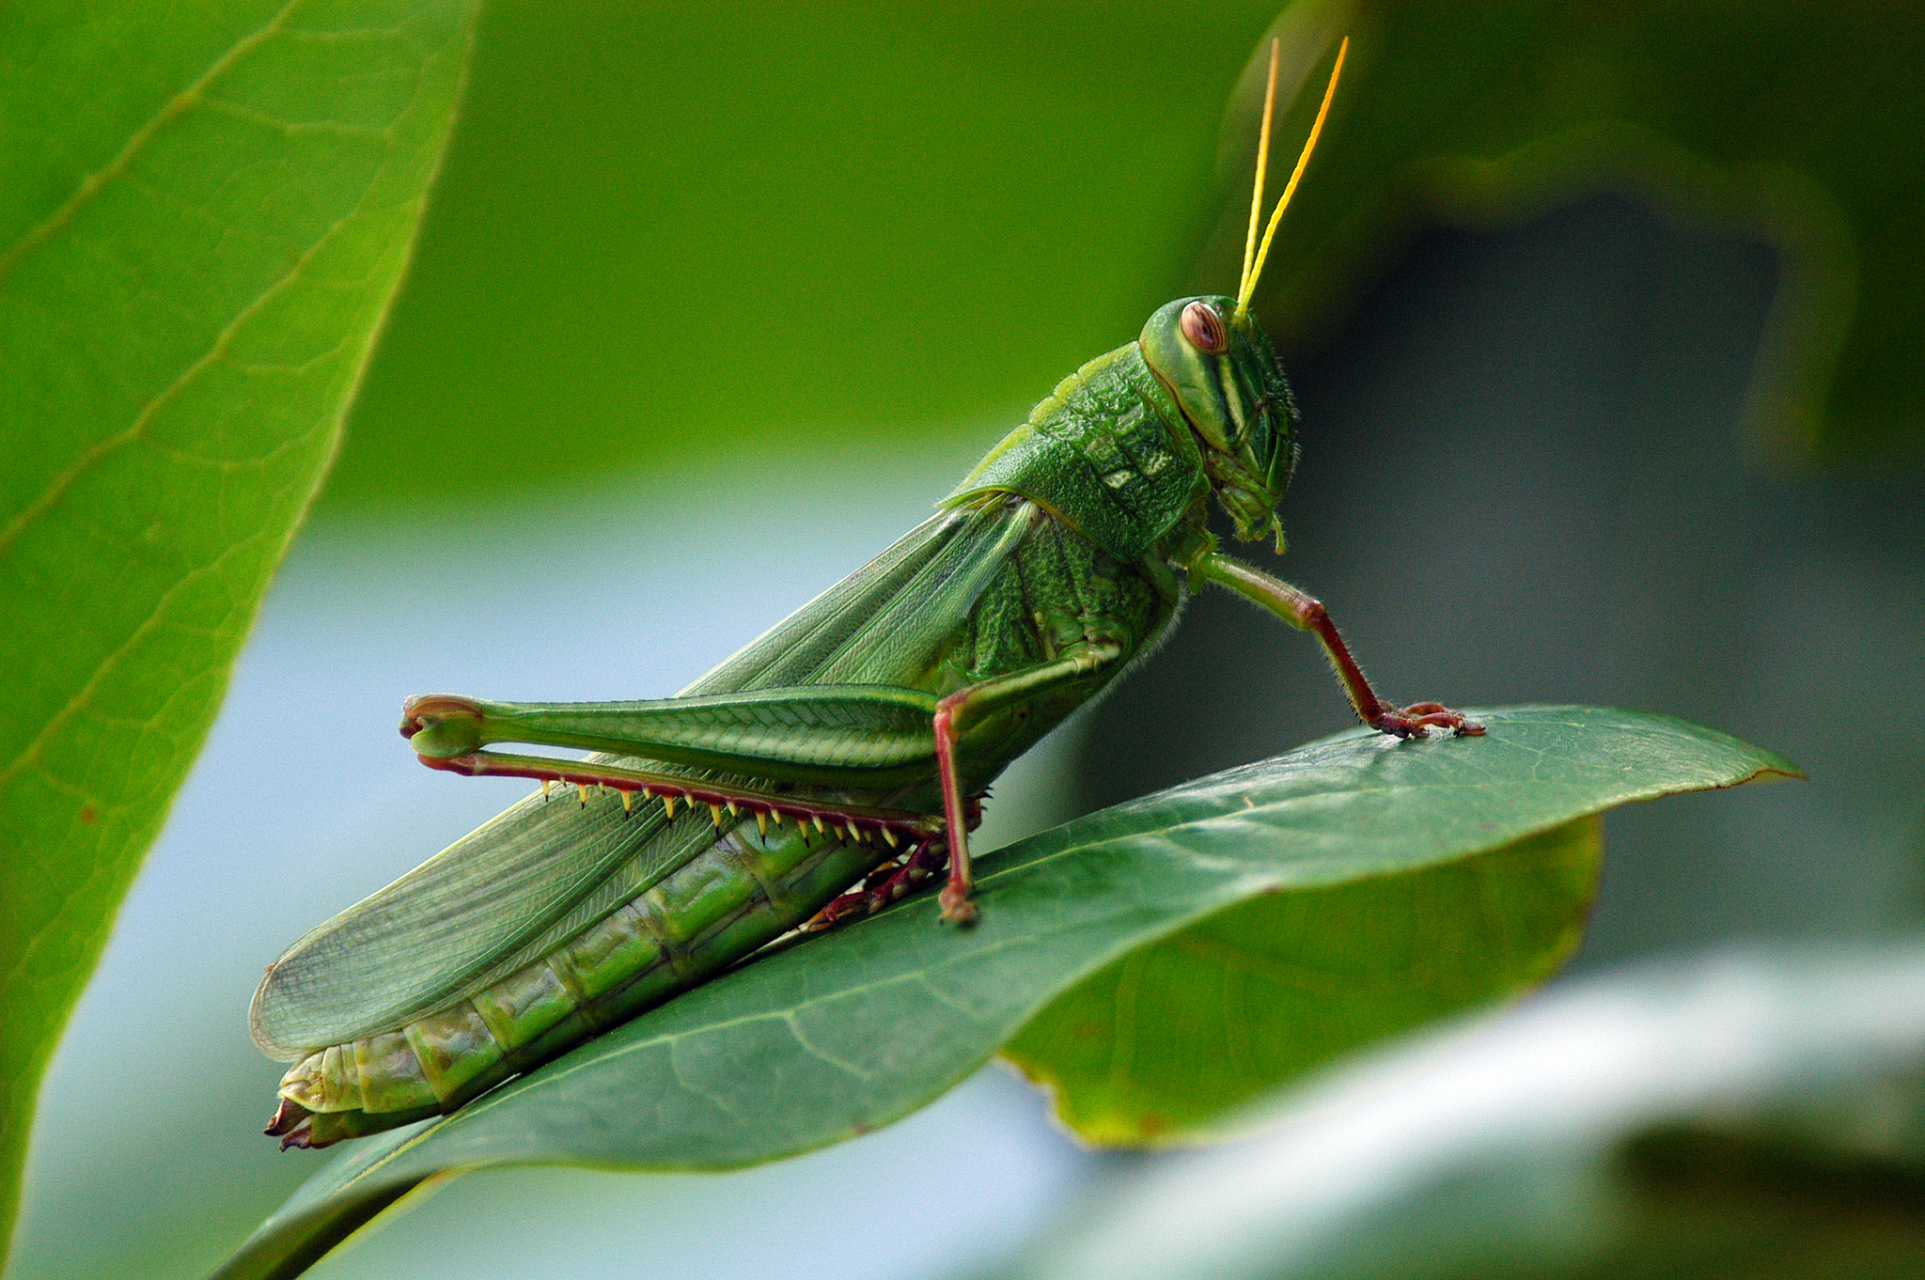 蝗虫是一种有害昆虫,对农业构成重大威胁